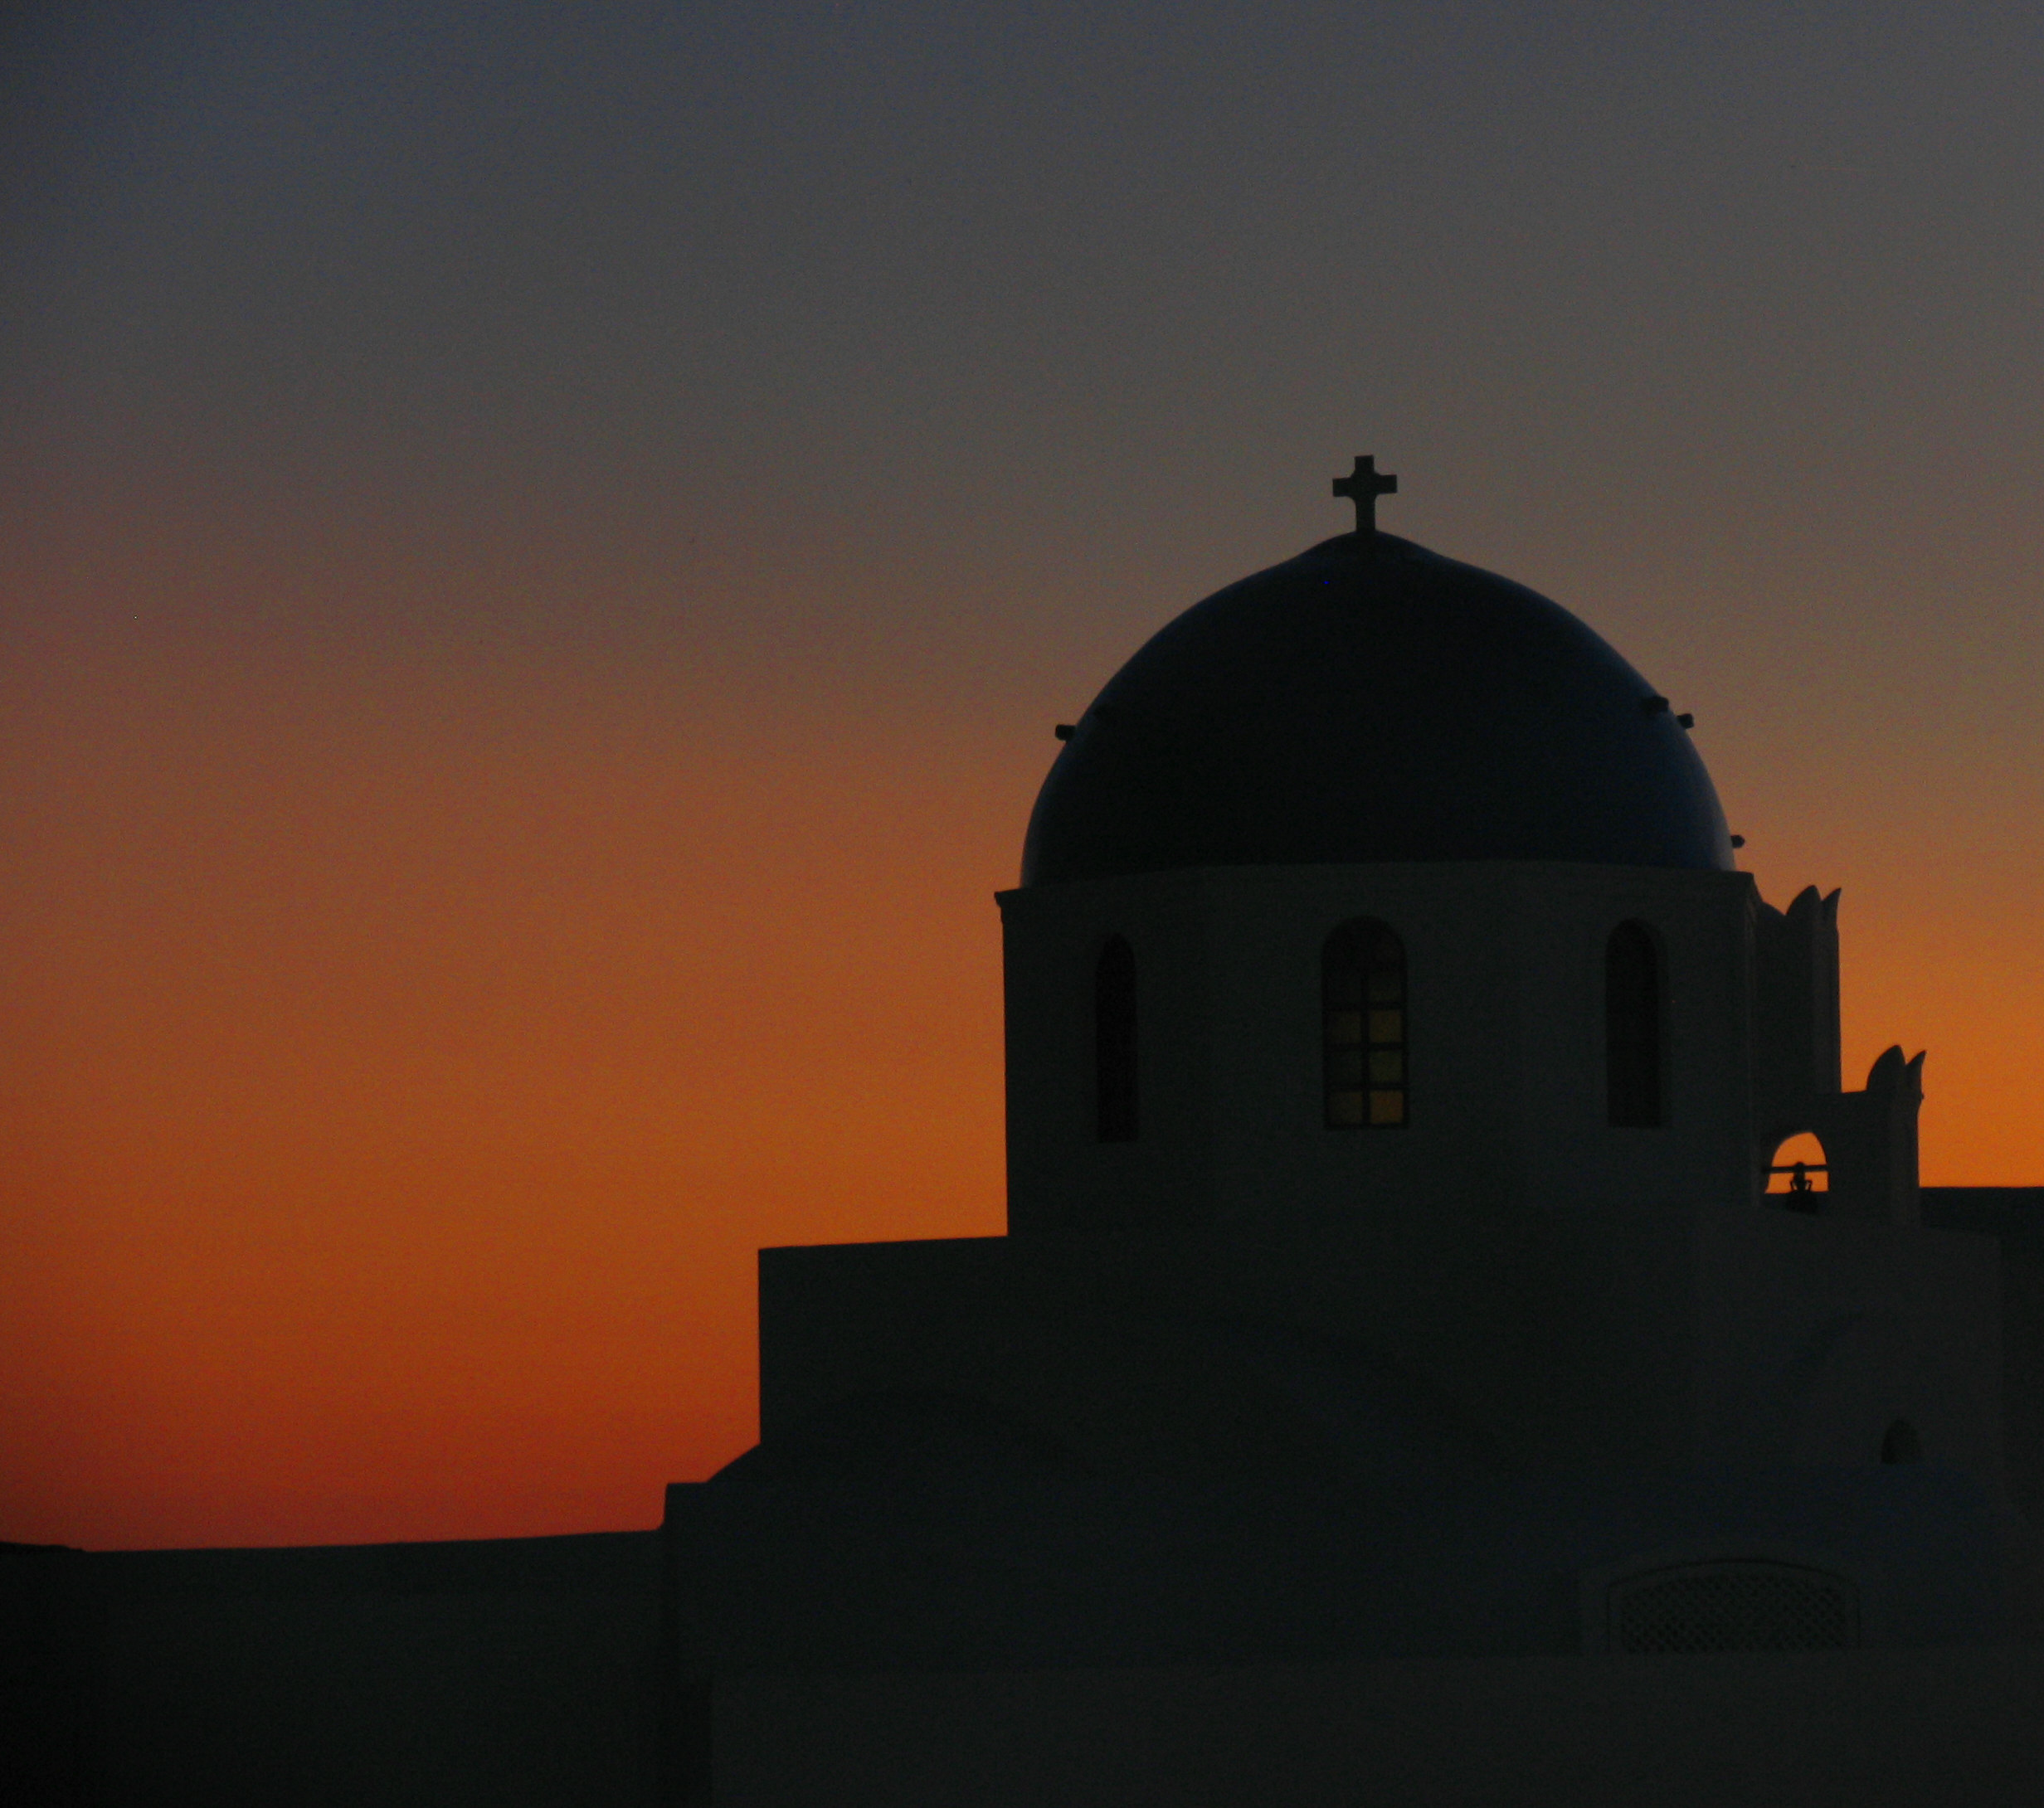 Church dome sunset - Oia, Greece 1